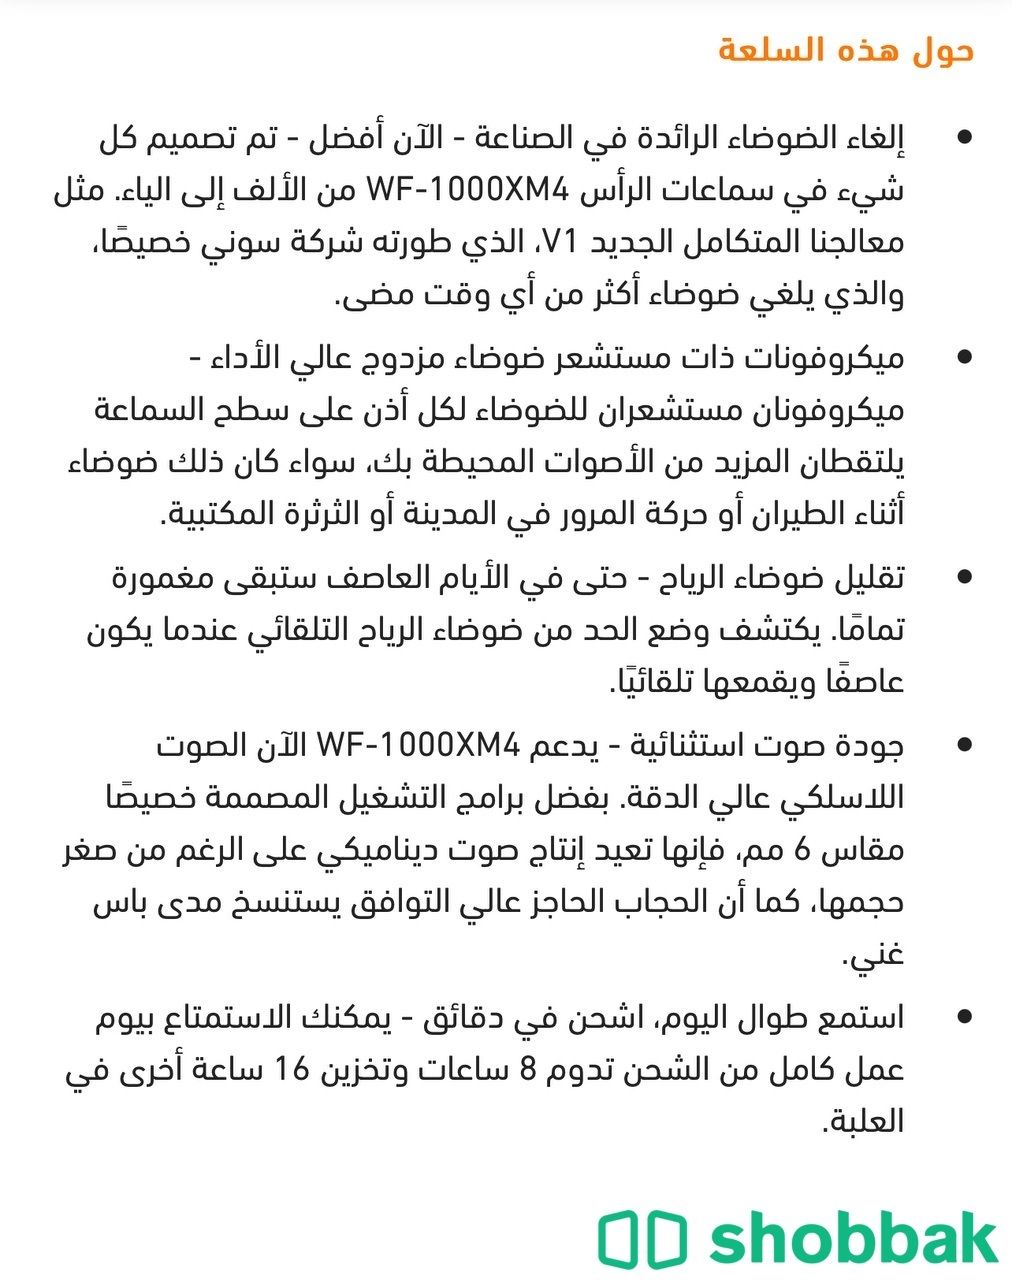 سماعات سوني WF-1000XM4 Shobbak Saudi Arabia